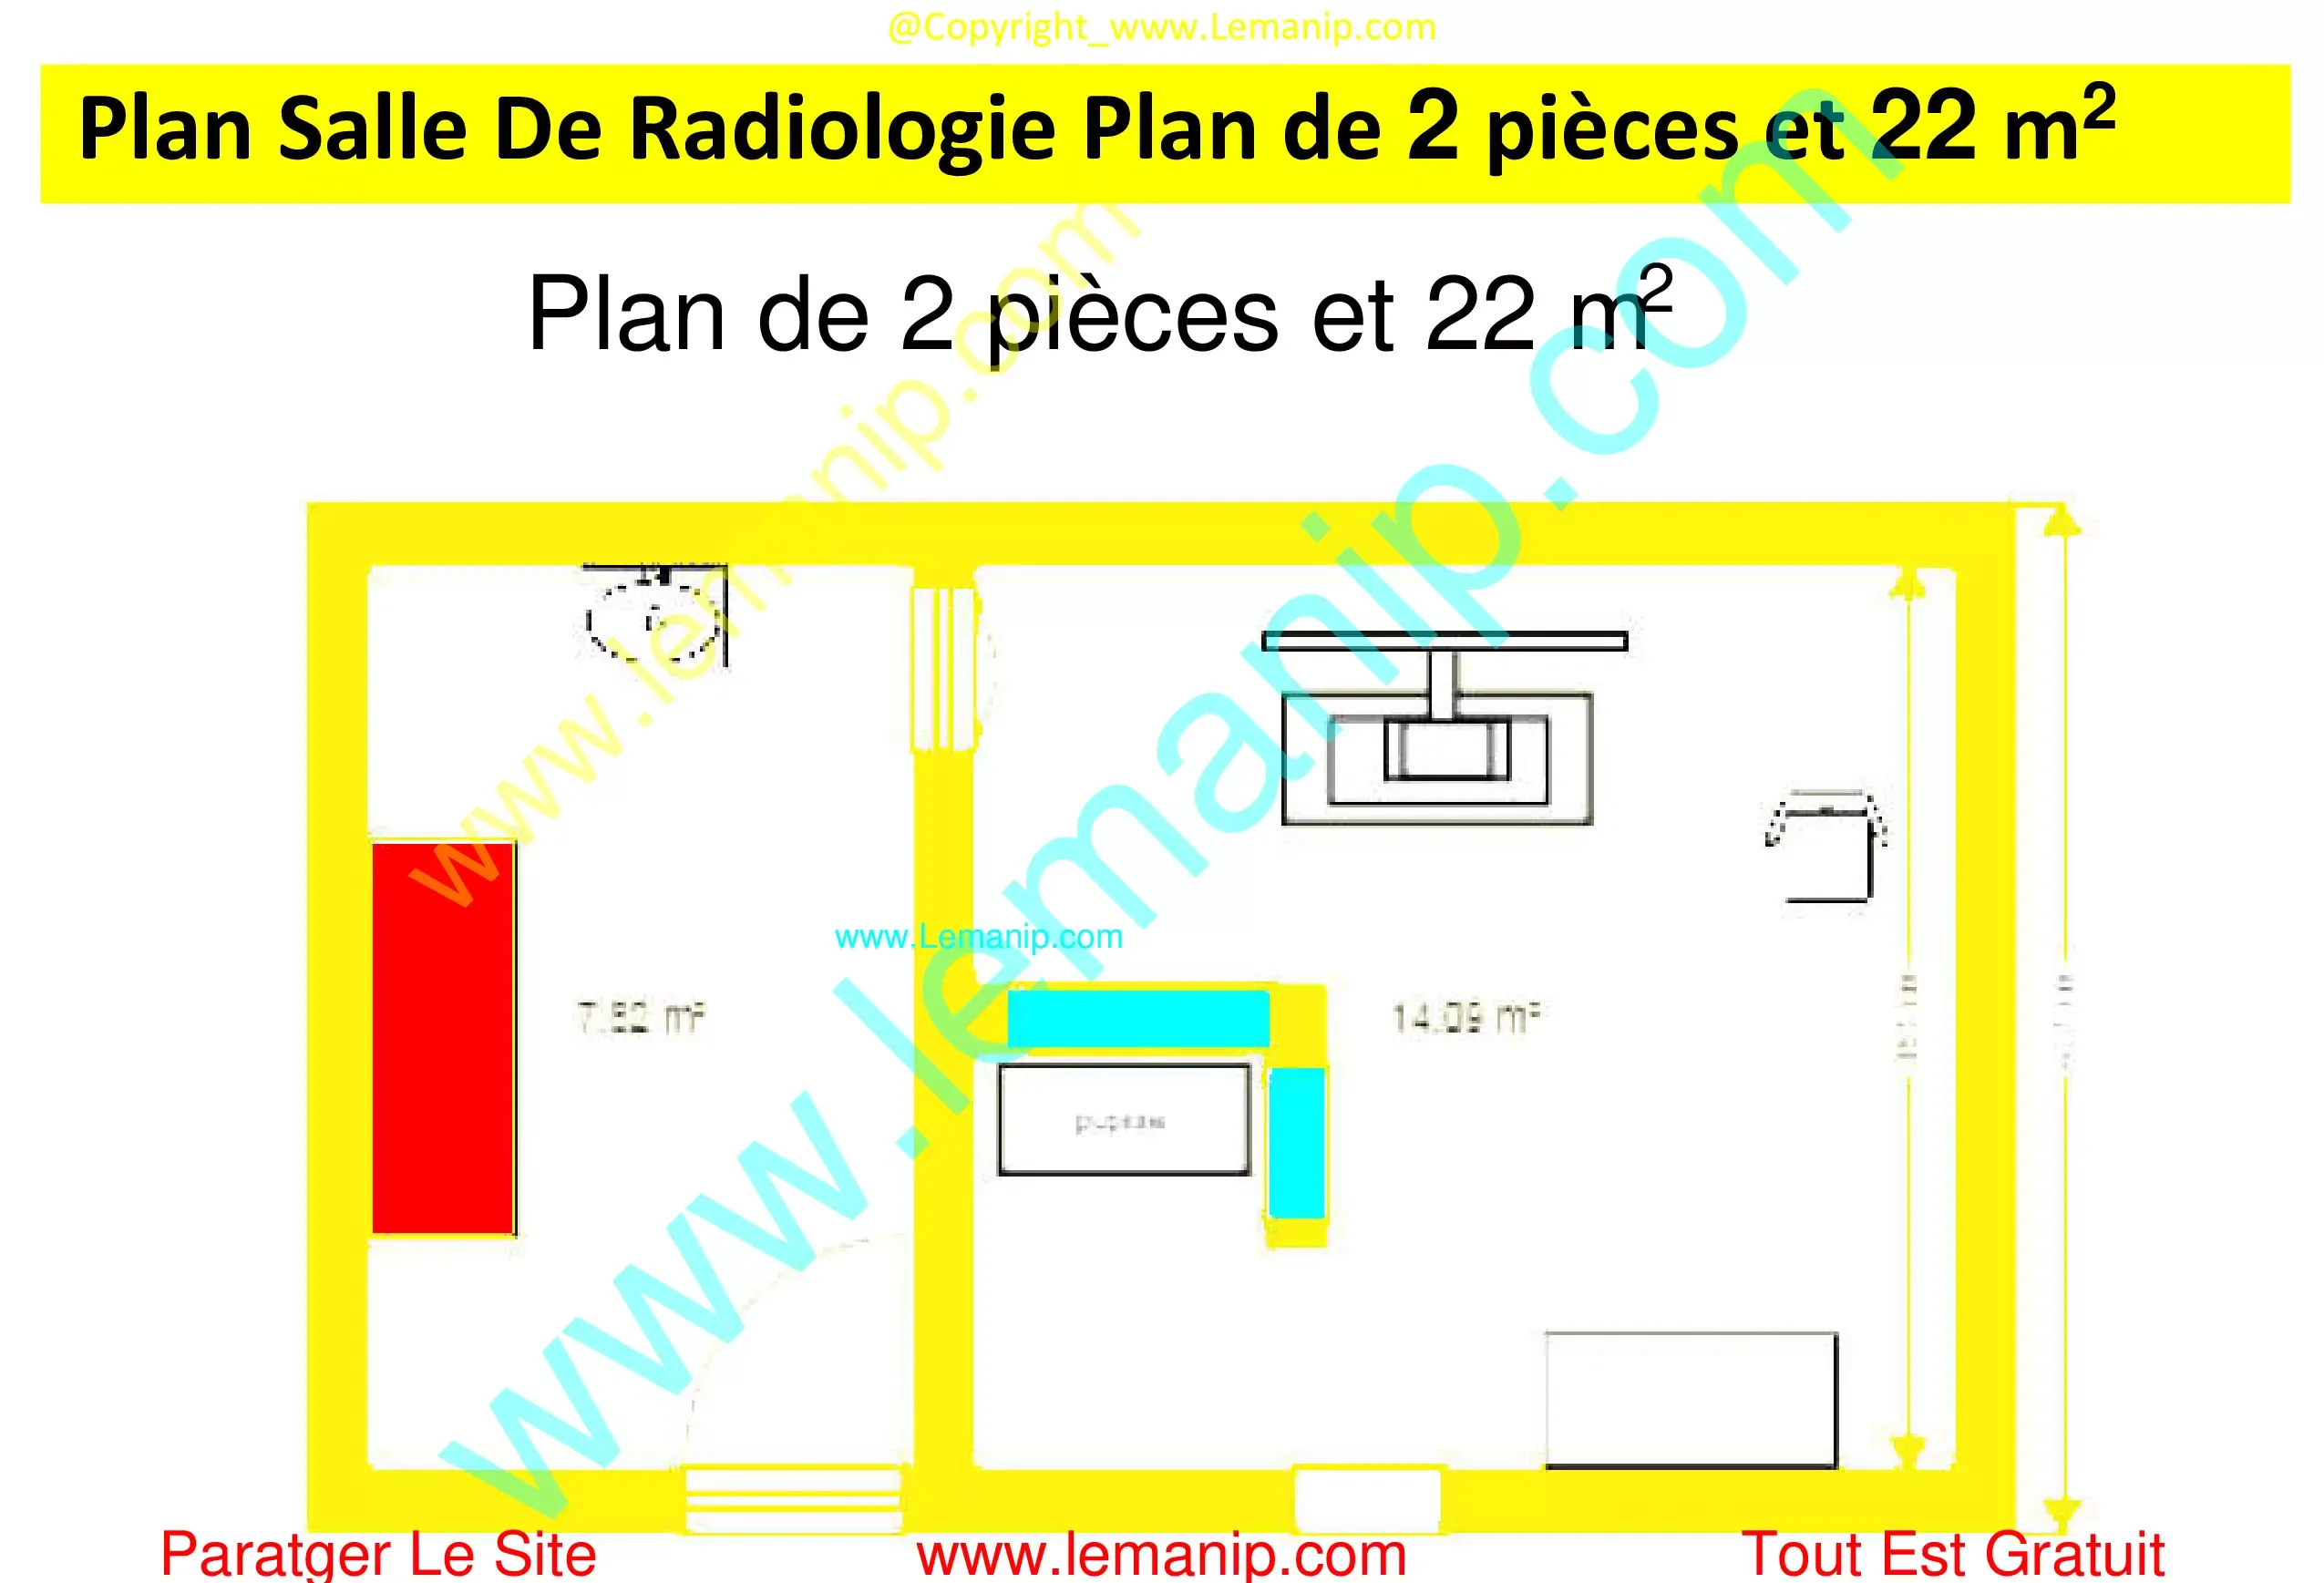 Plan Salle De Radiologie Plan de 2 pièces et 22m2